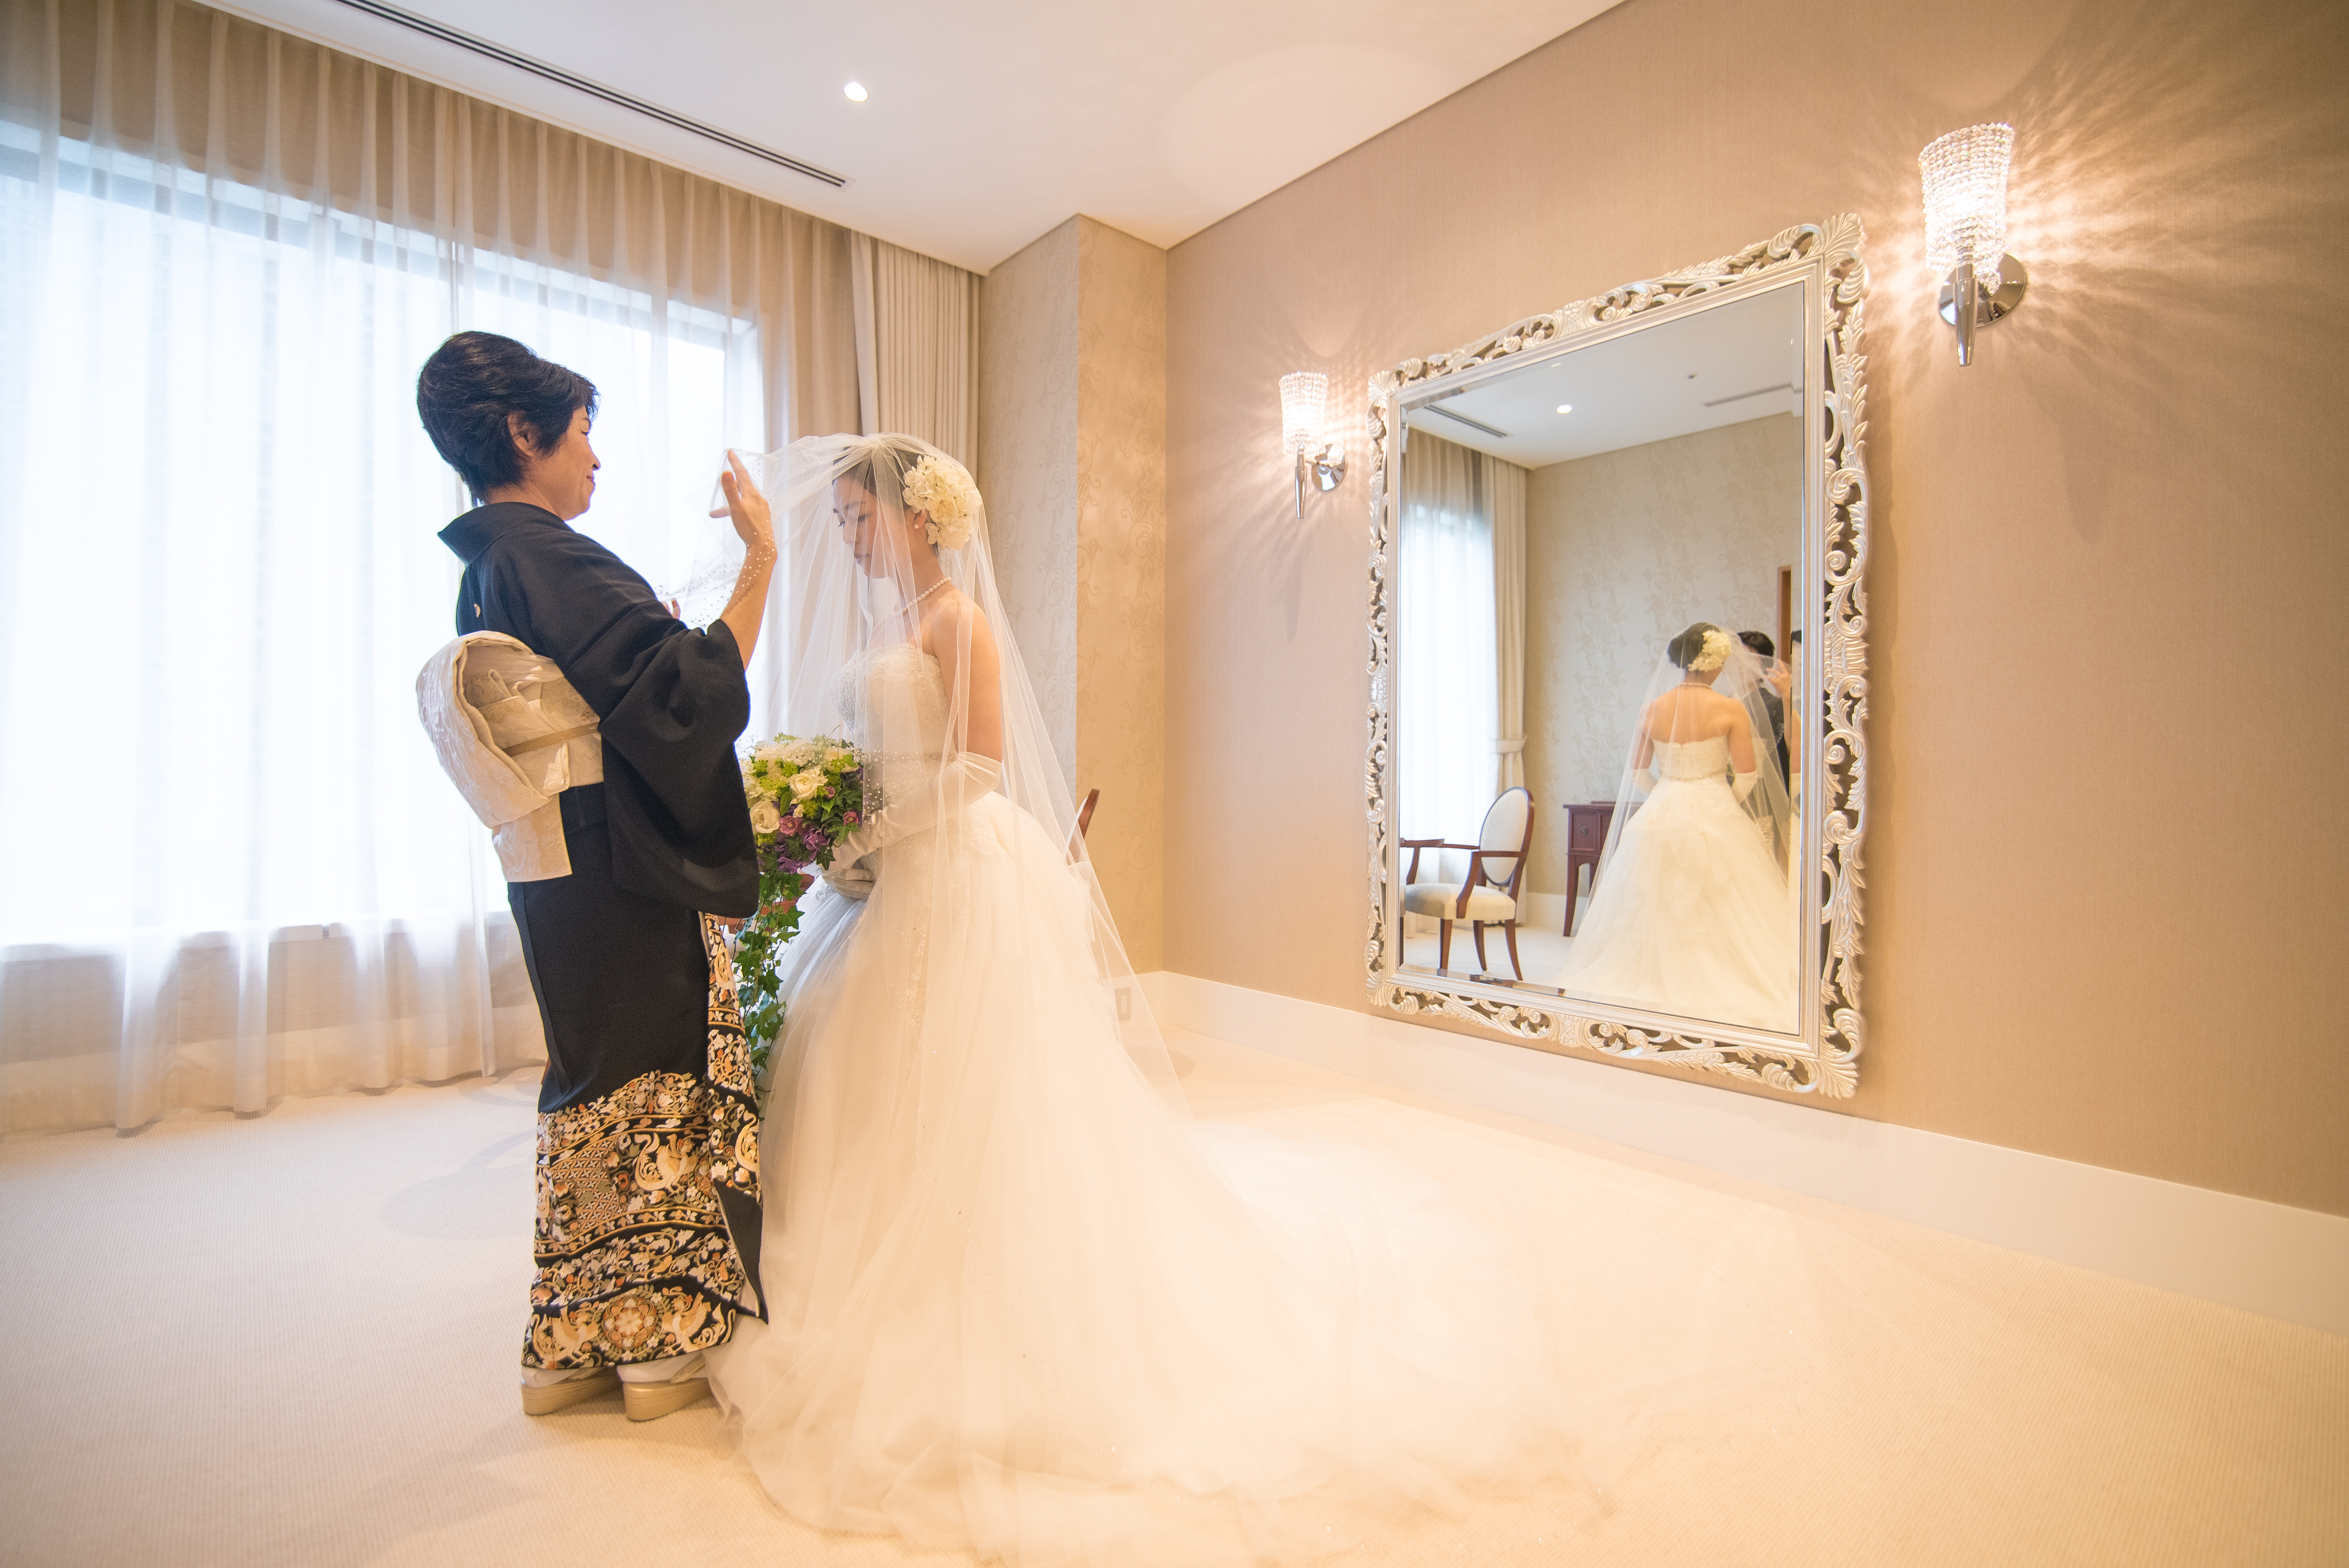 ハイアットリージェンシー東京 結婚式出張撮影ギリフォトワークス